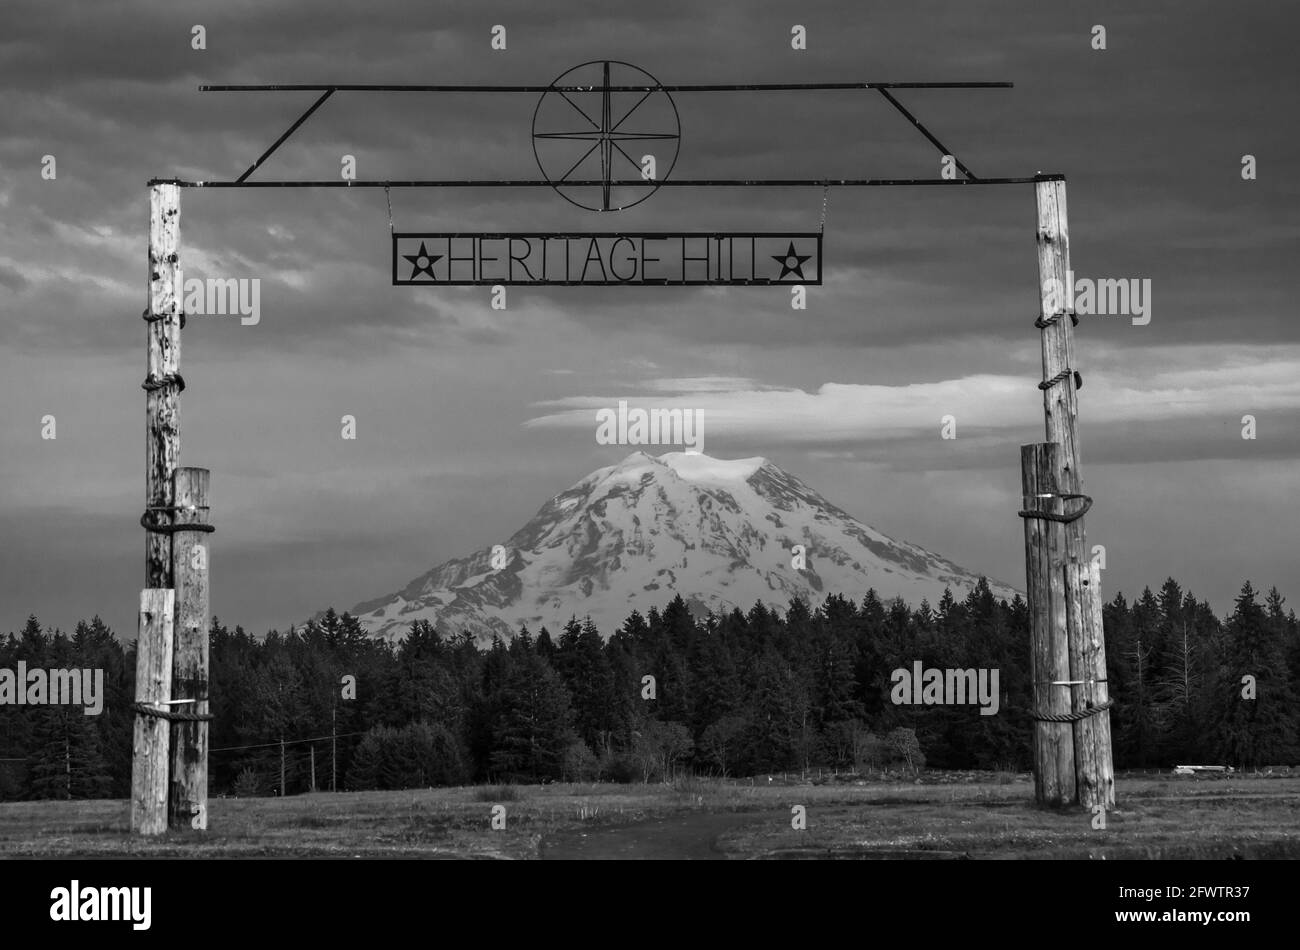 Mt Rainer, État de Washington, vue de Heritage Hill au musée de l'air McChord AFB. Banque D'Images